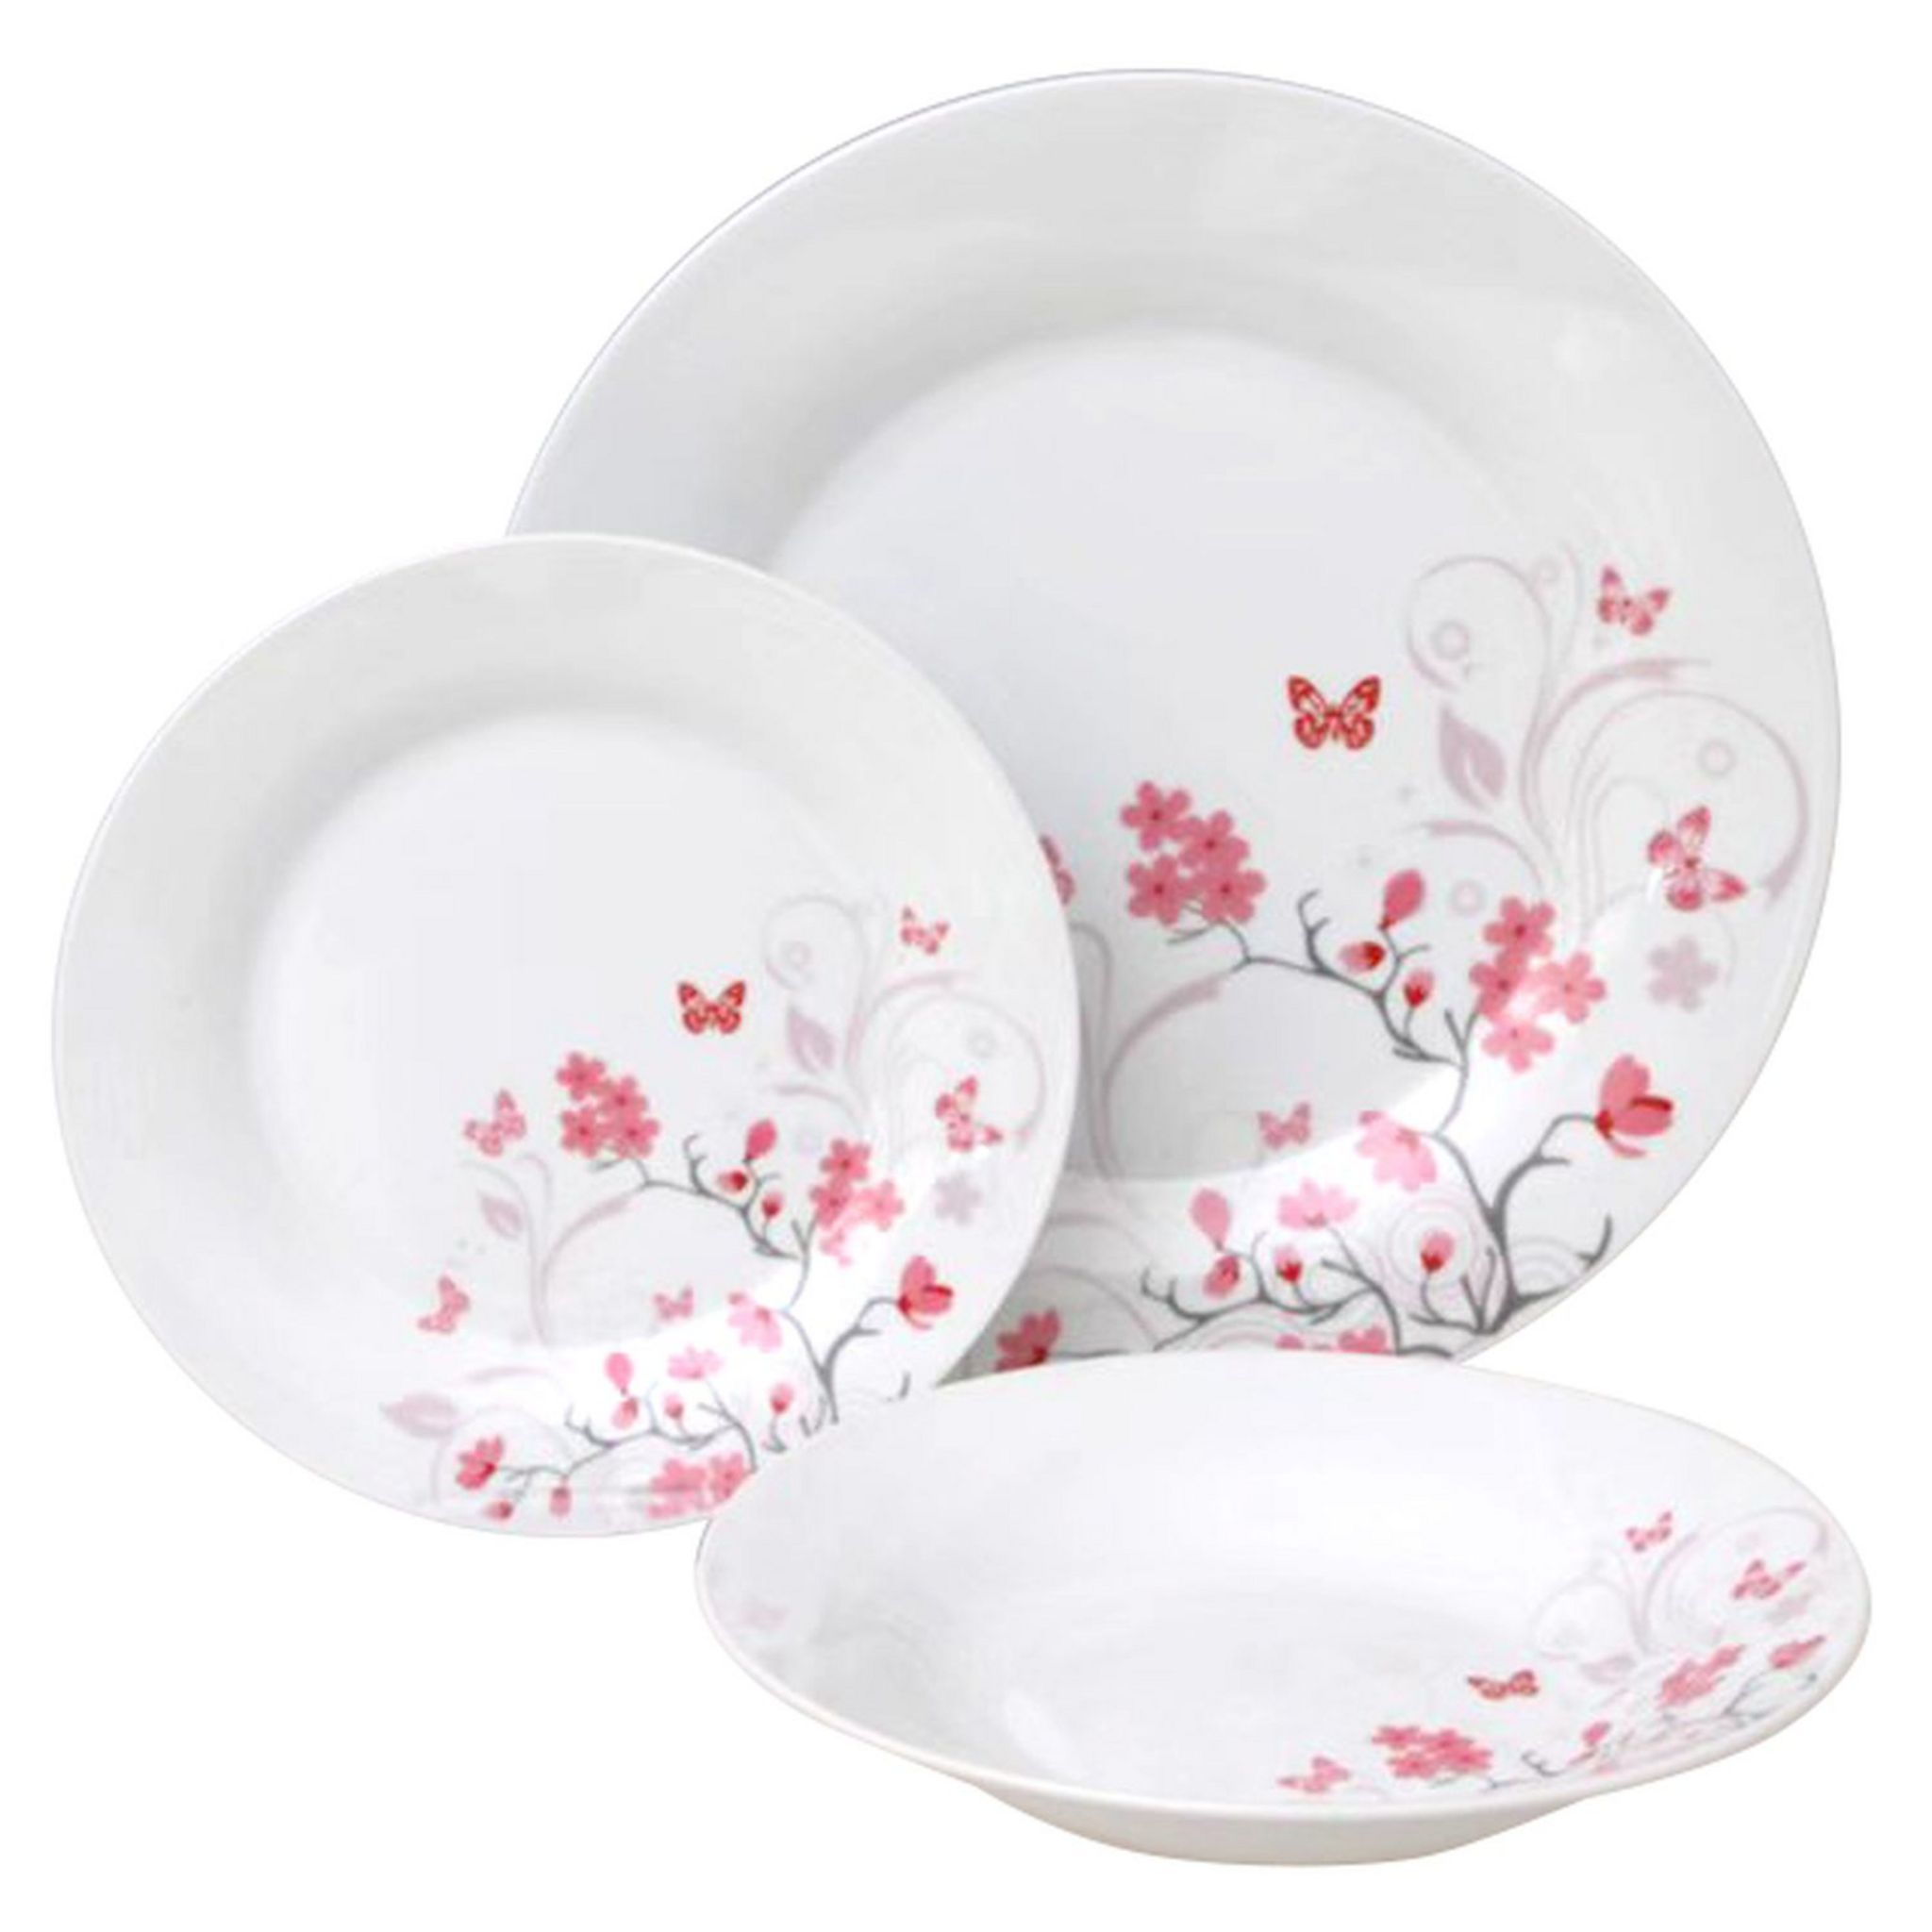 Services de table Wit - 18 pièces - Porcelaine - Assiette plate / assiette  plate / bol